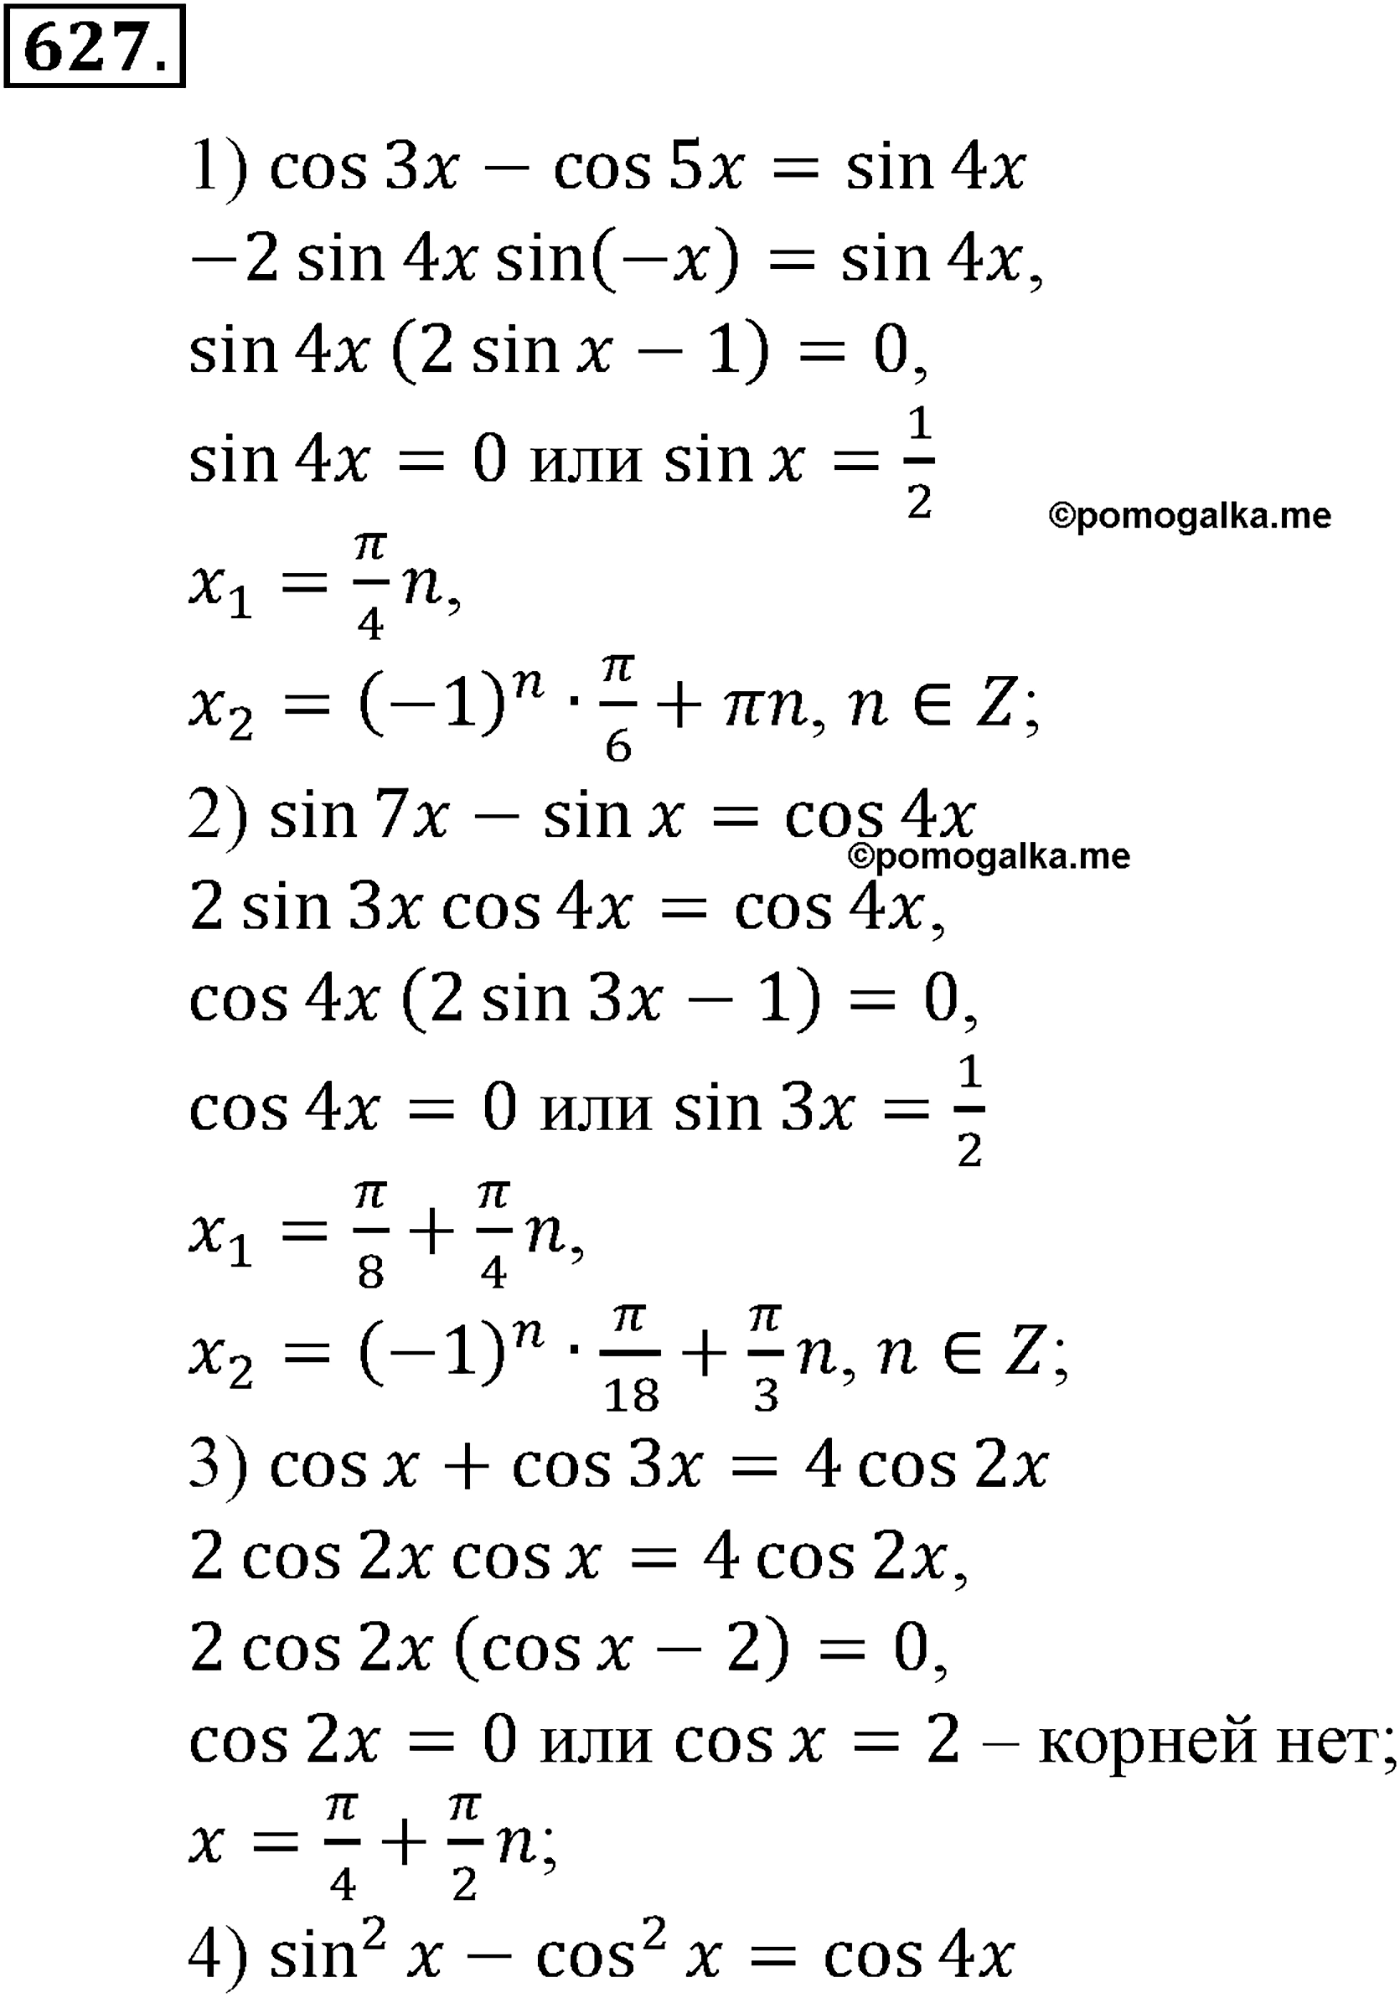 разбор задачи №627 по алгебре за 10-11 класс из учебника Алимова, Колягина